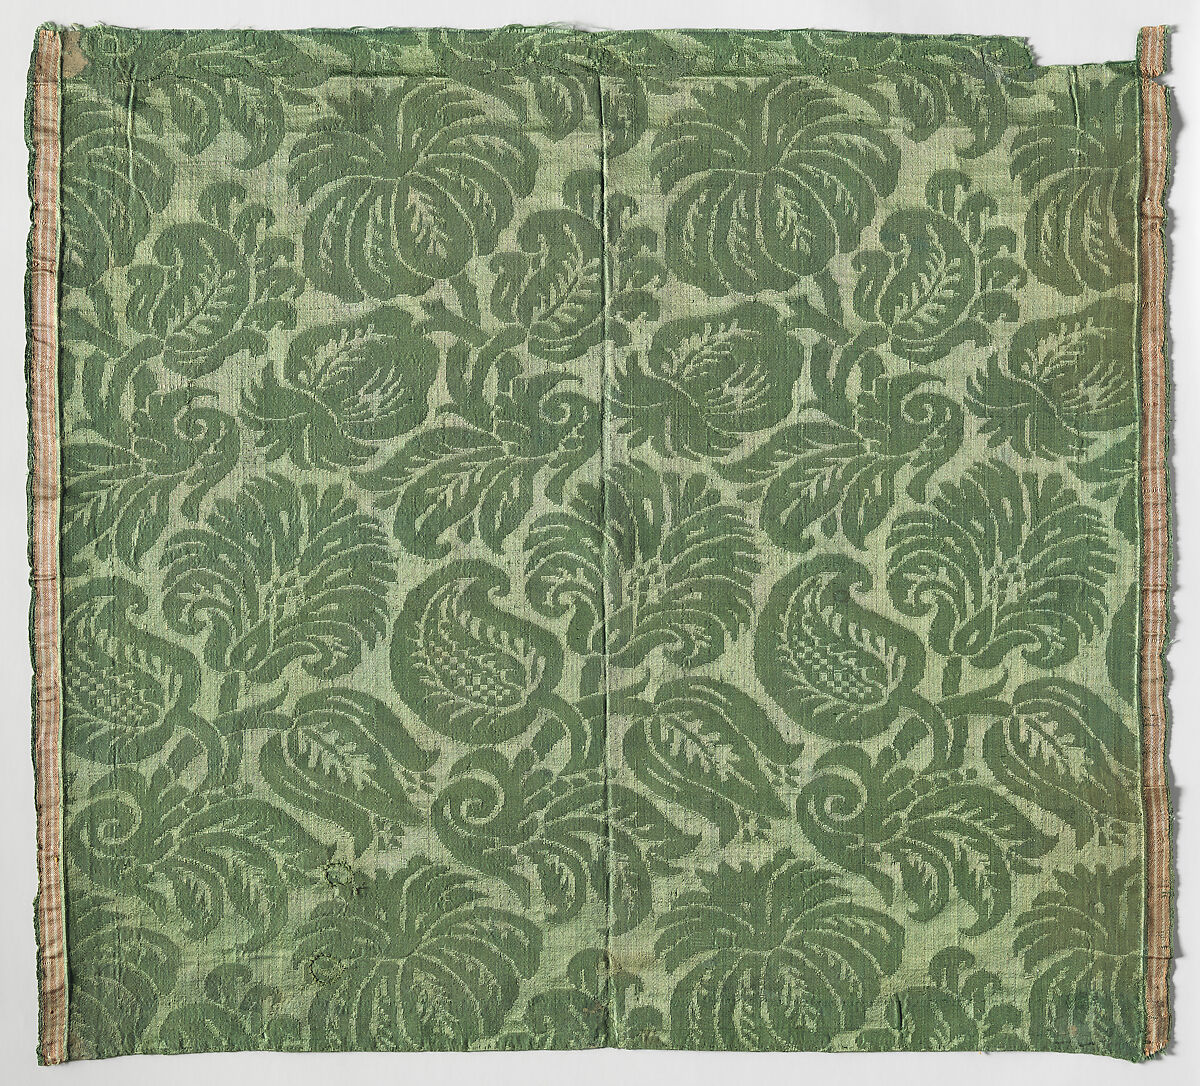 Green Silk Damask, Silk damask weave, Italian, Venice or Genoa 